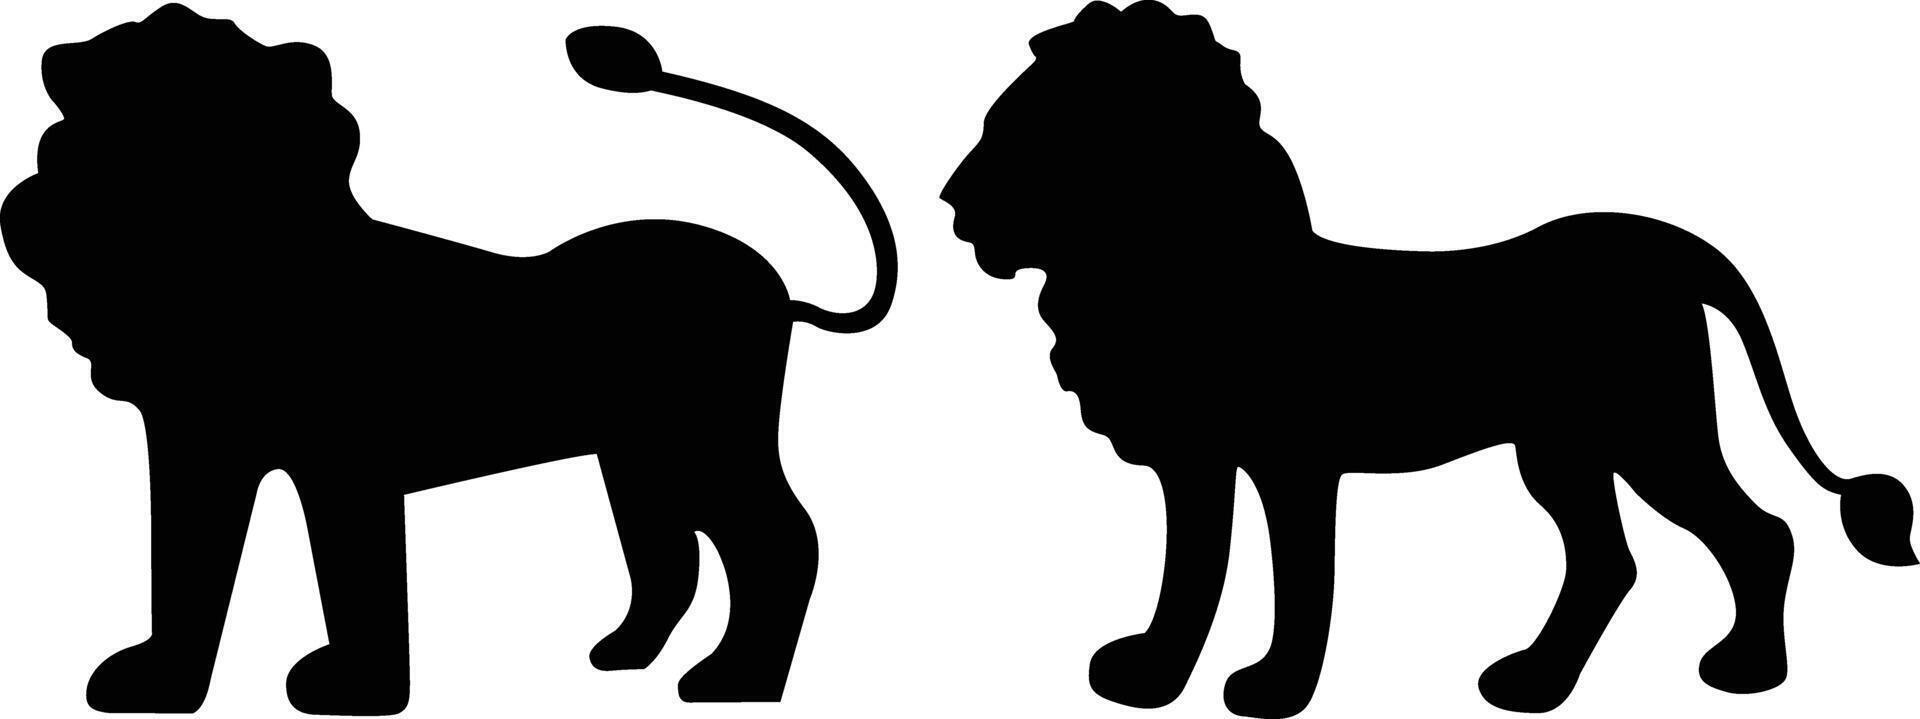 Lion silhouette vecteur